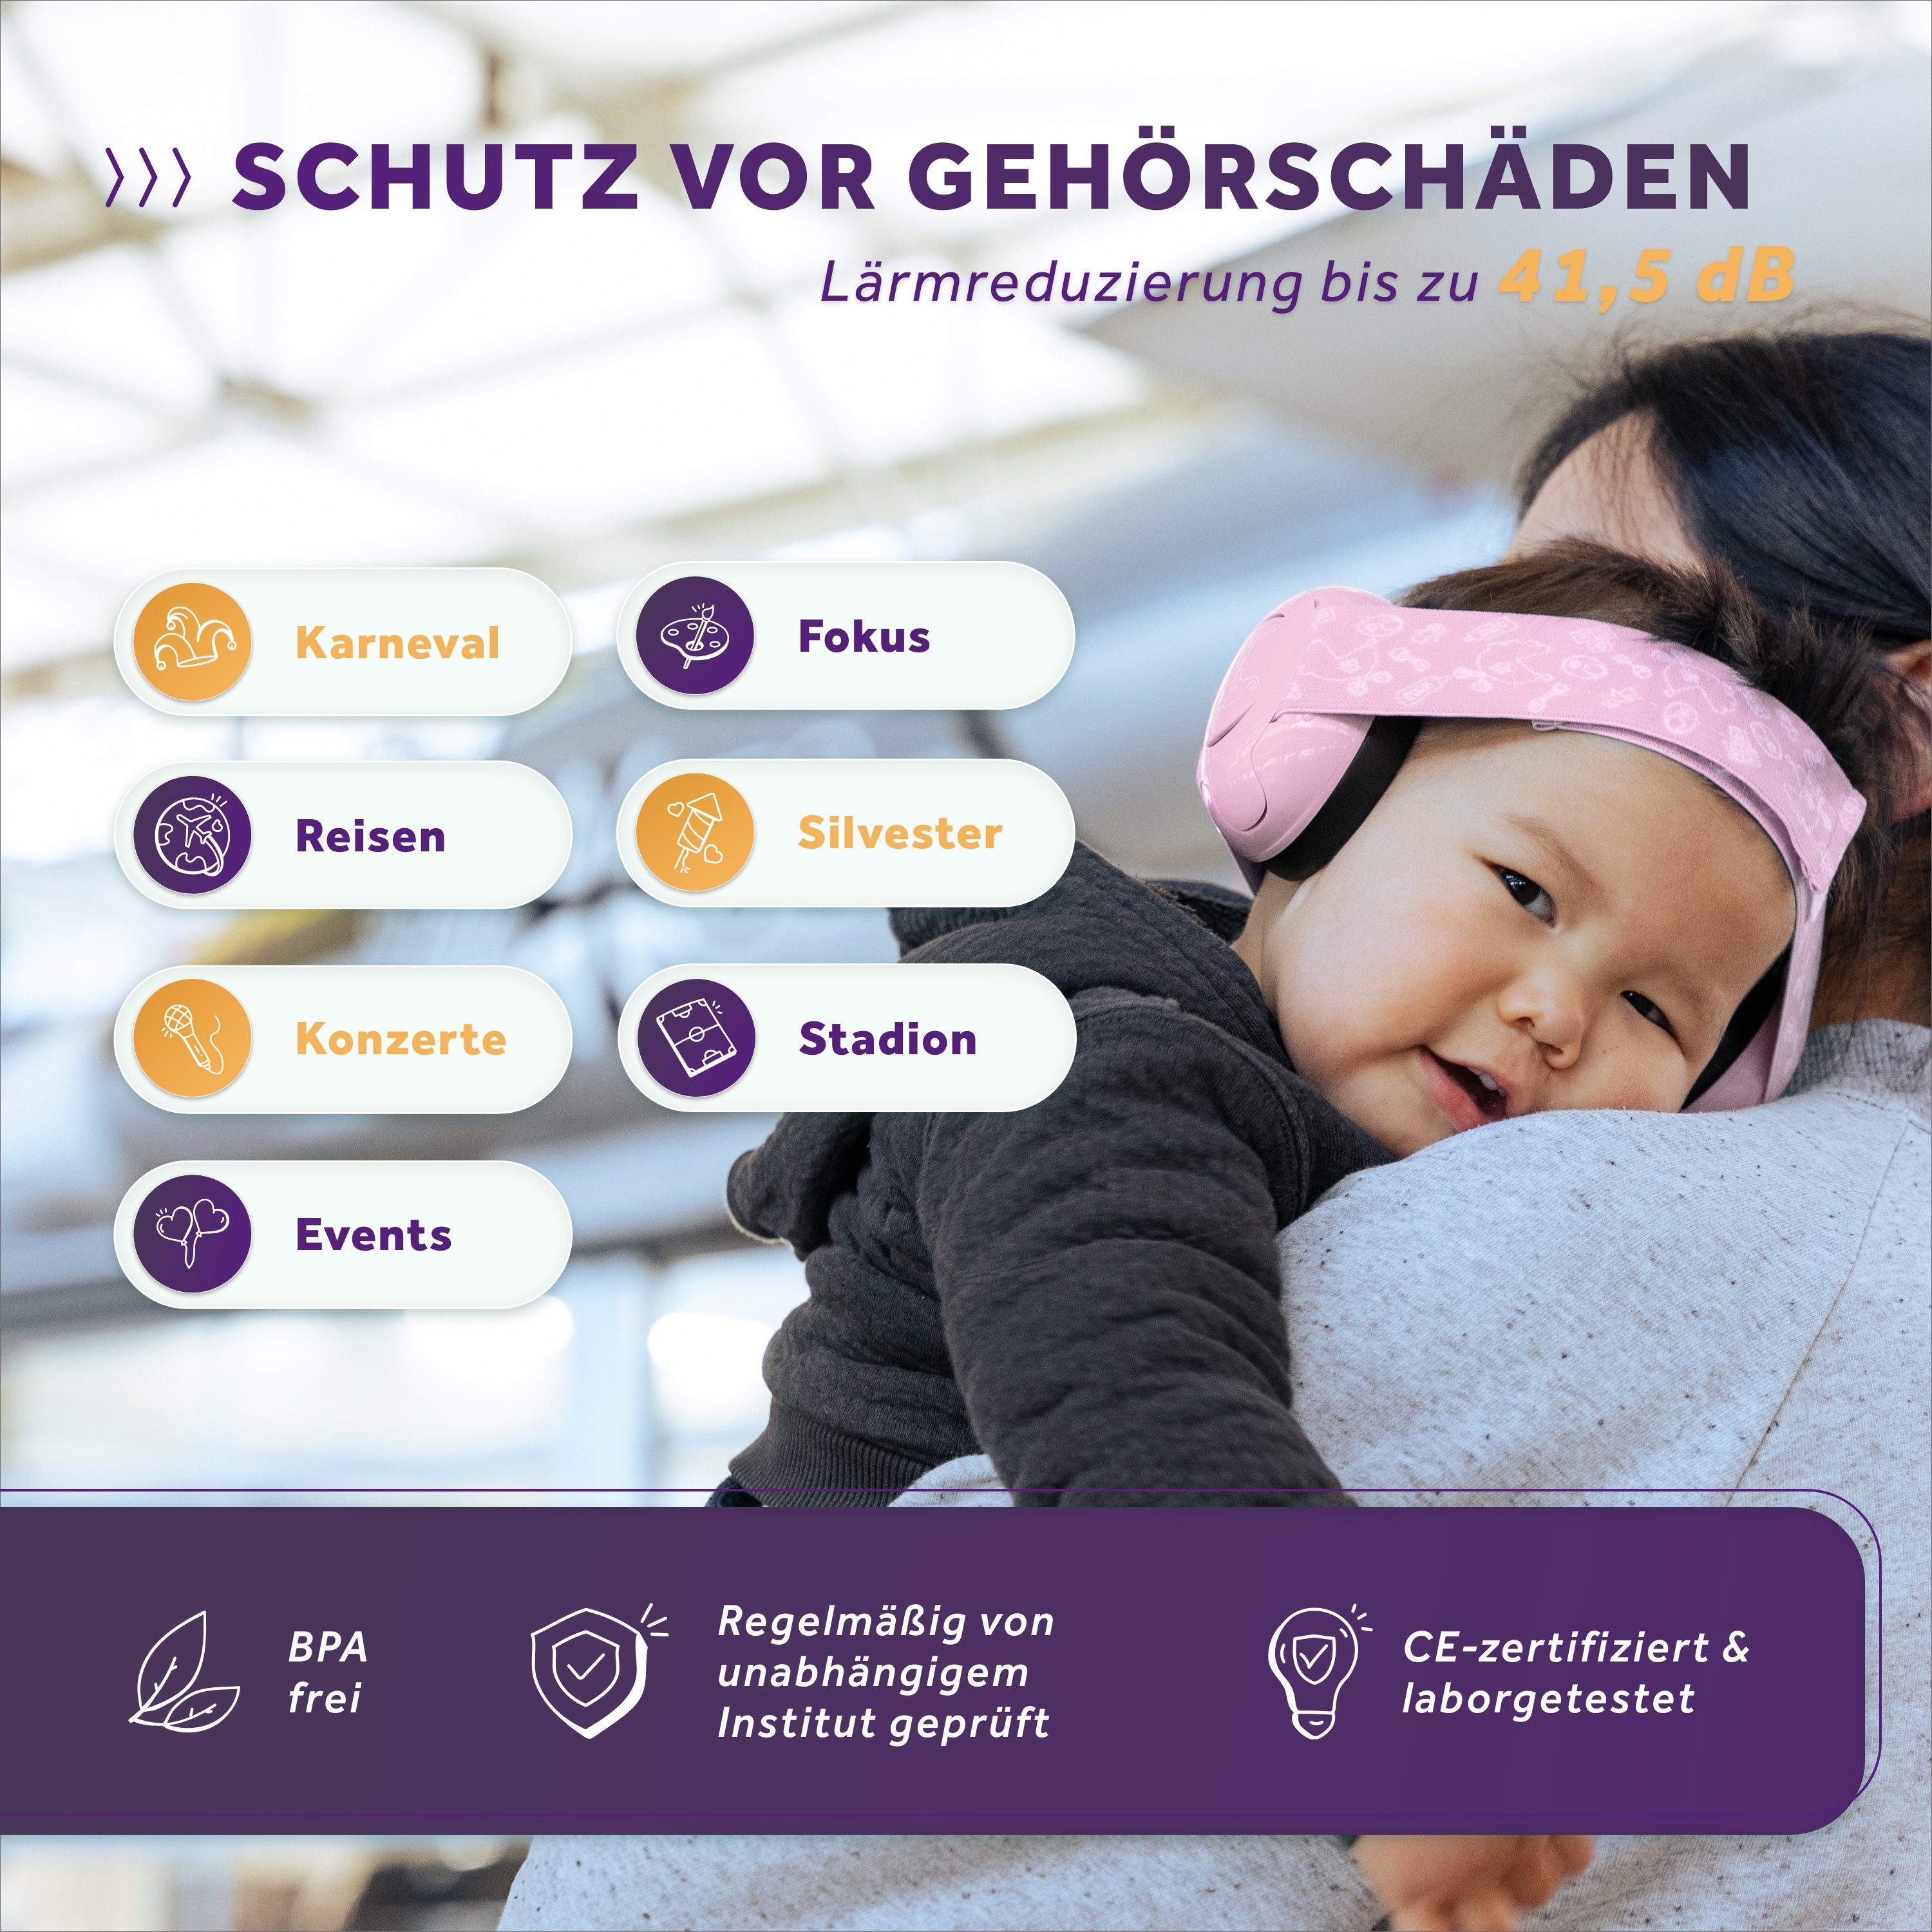 Schallwerk Kapselgehörschutz Schallwerk® Mini+ Gehörschutz Kapselgehörschutz Rosa für Kinder Kleinkind –